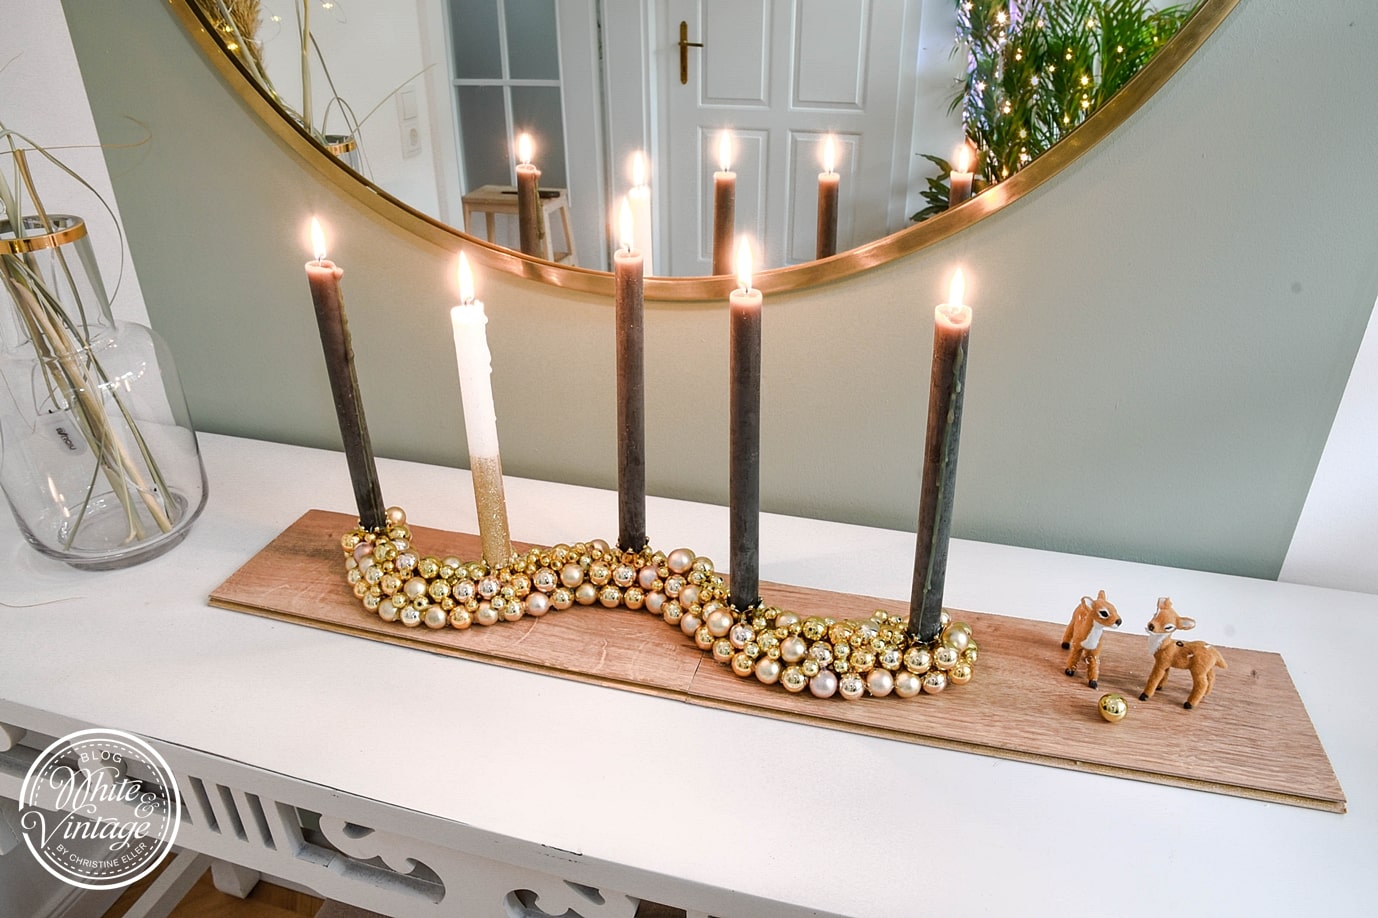 Kerzenhalter / Kerzenständer aus Weihnachtskugeln selber machen | DIY und  Deko Blog White and Vintage